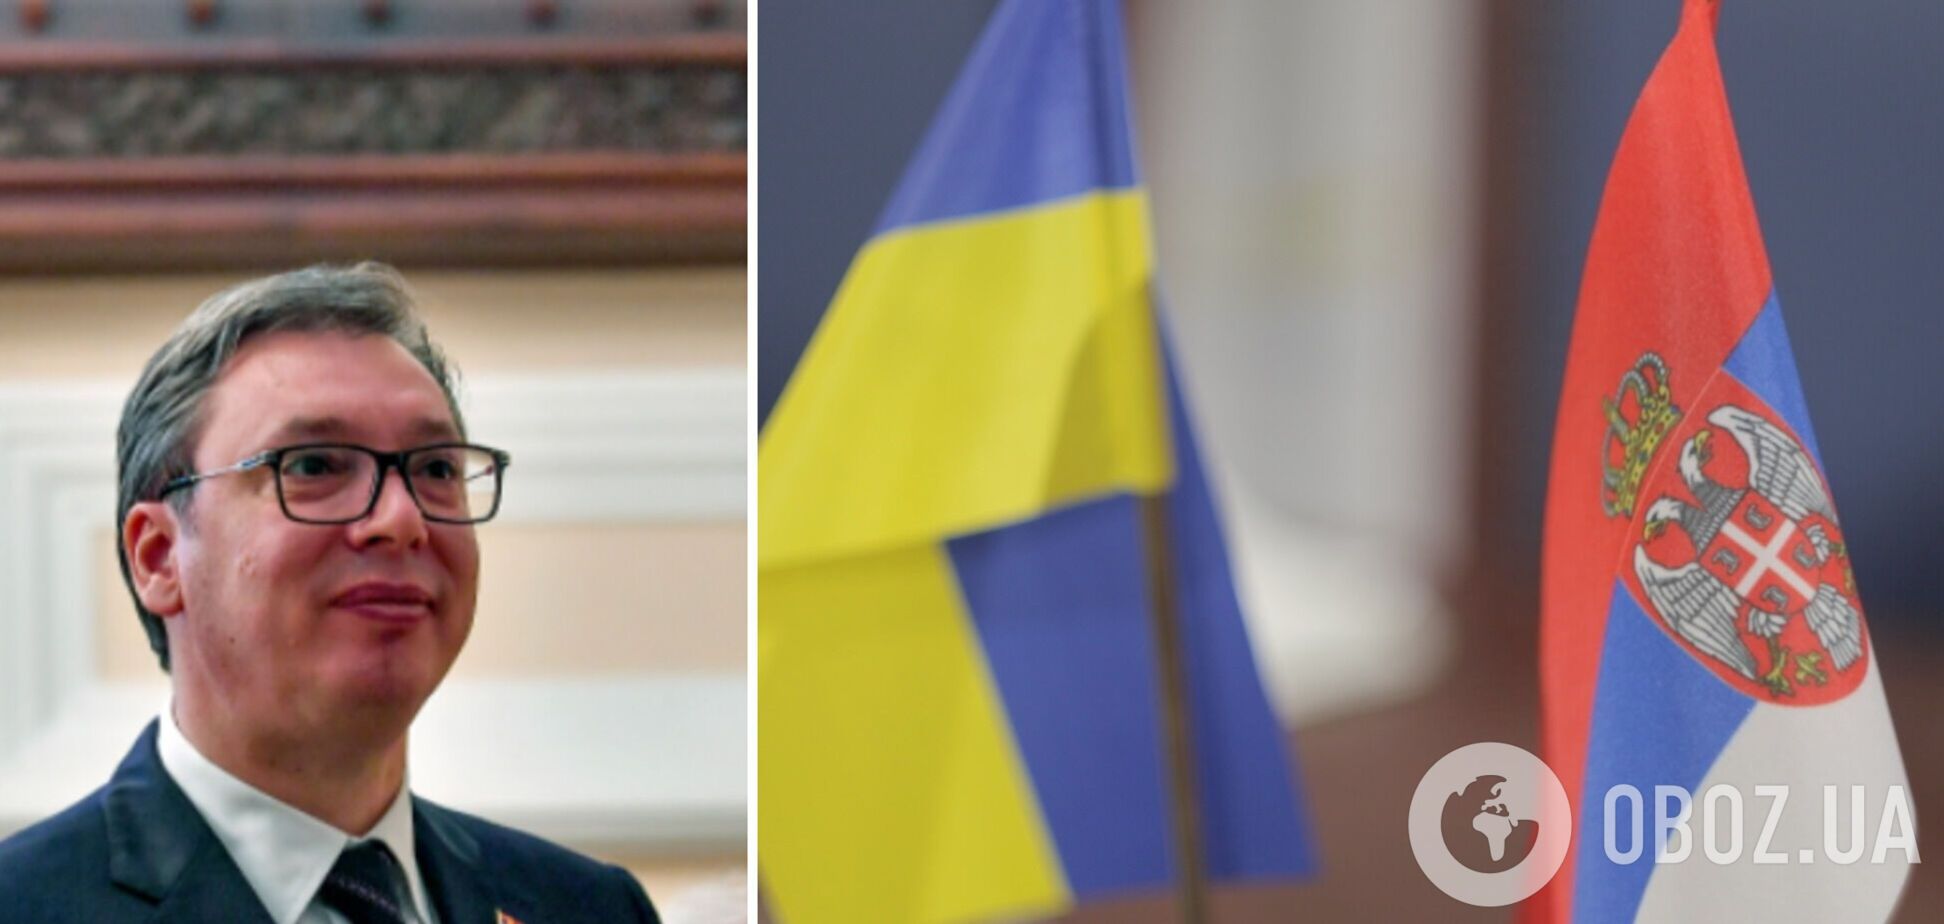 Вучич заявил, что уважает территориальную целостность Украины, и пообещал помощь